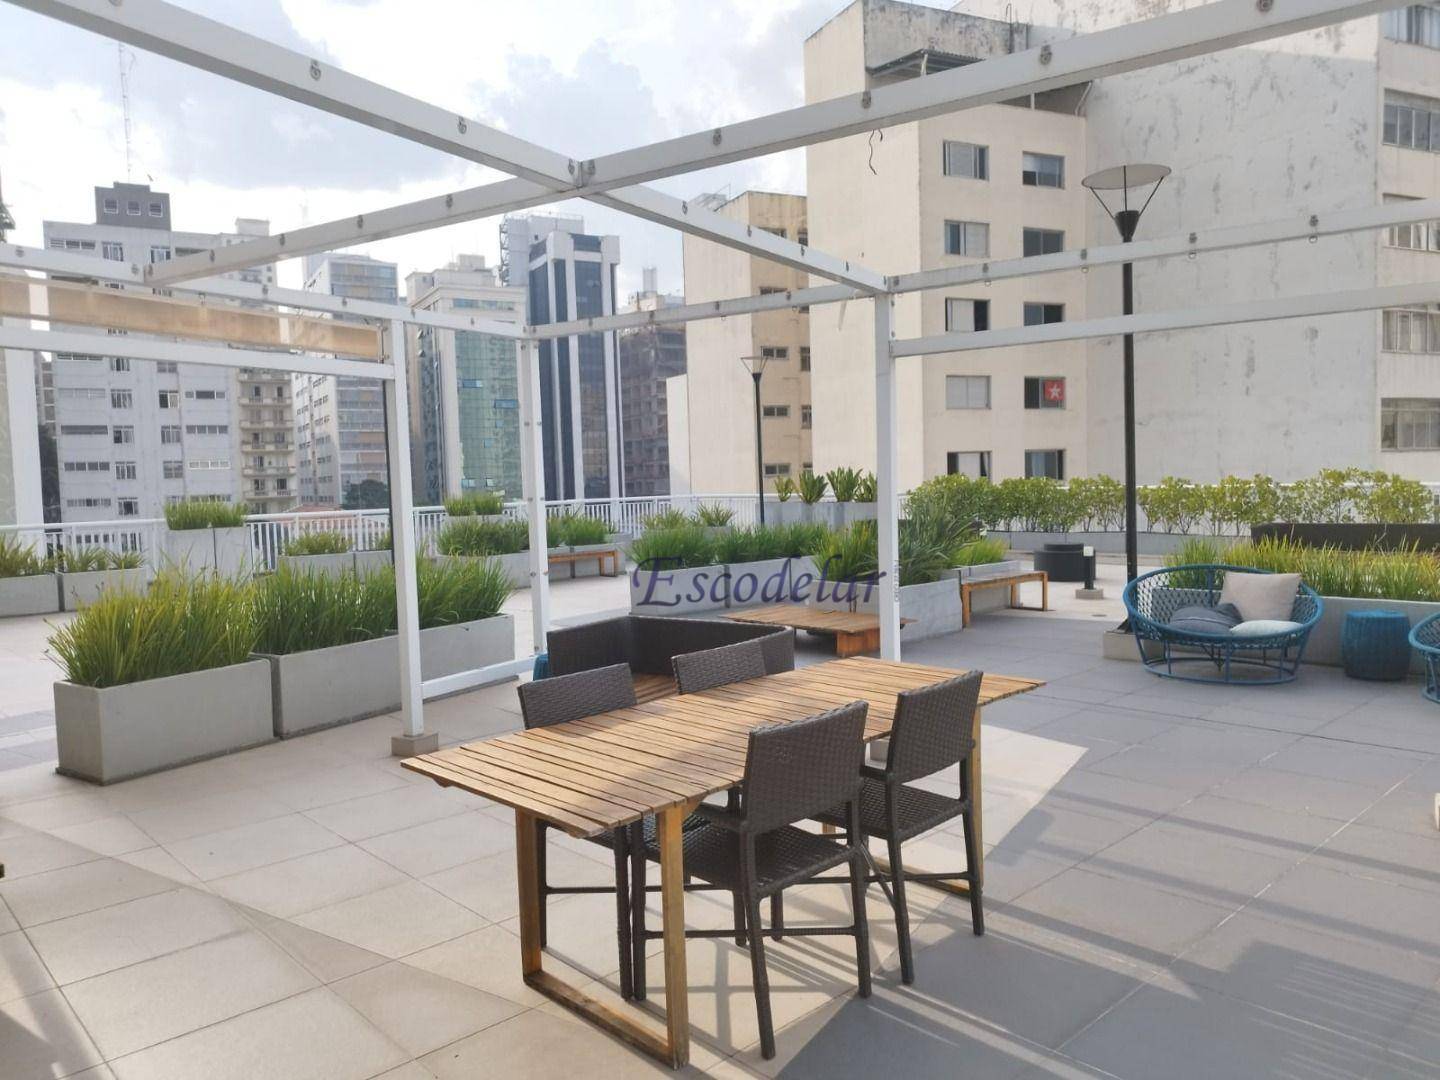 Apartamento à venda, 57 m² por R$ 655.000,00 - Higienópolis - São Paulo/SP